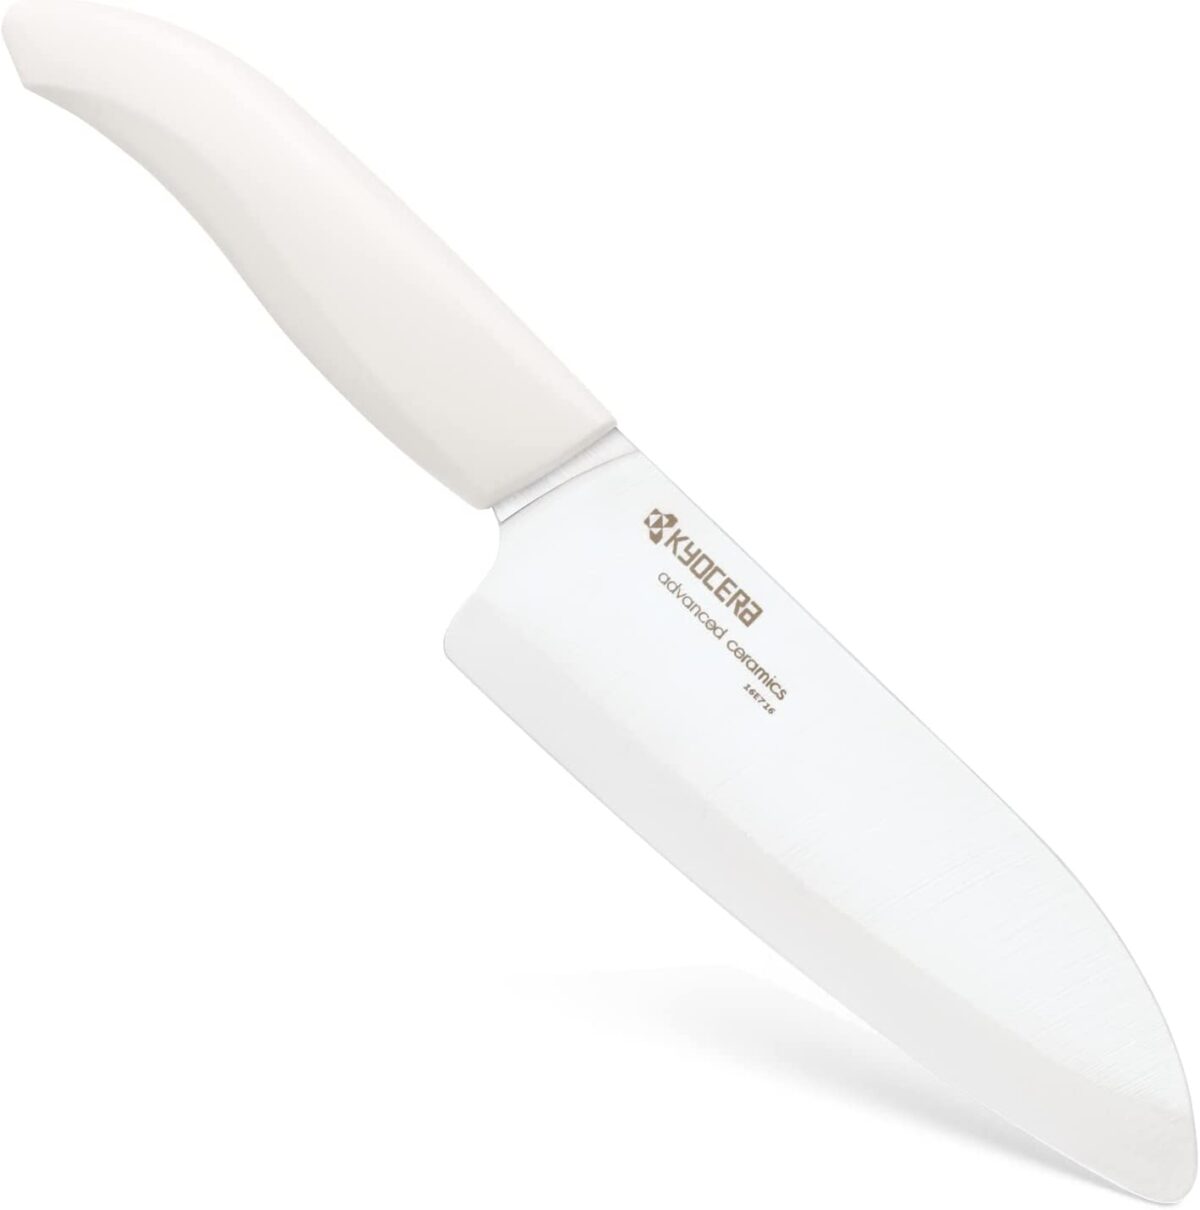 Комплект керамичен нож KYOCERA серия GEN и белачка - цвят бял